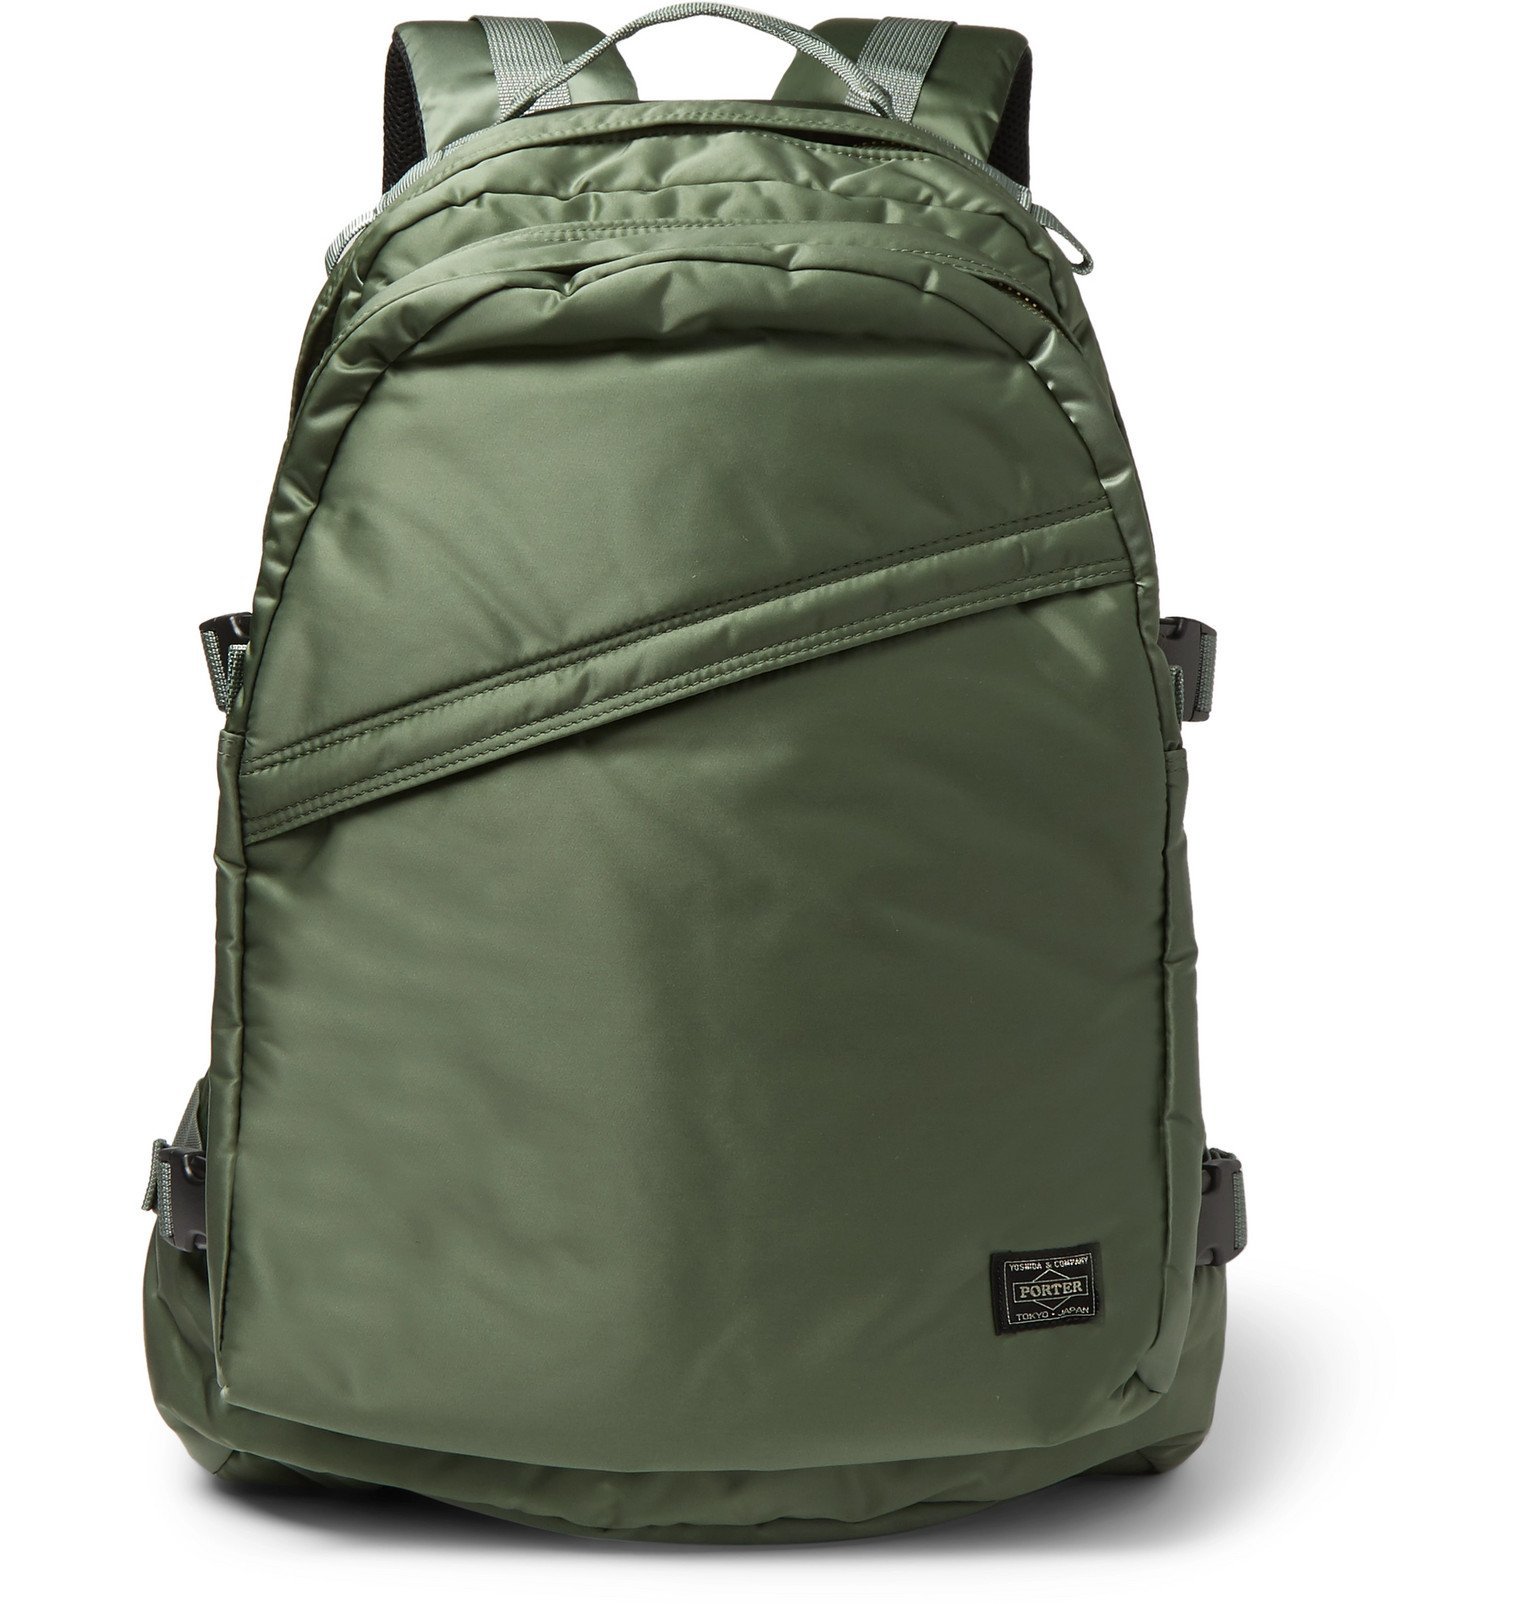 Porter-Yoshida & Co - Tanker Padded Shell Backpack - Green Porter